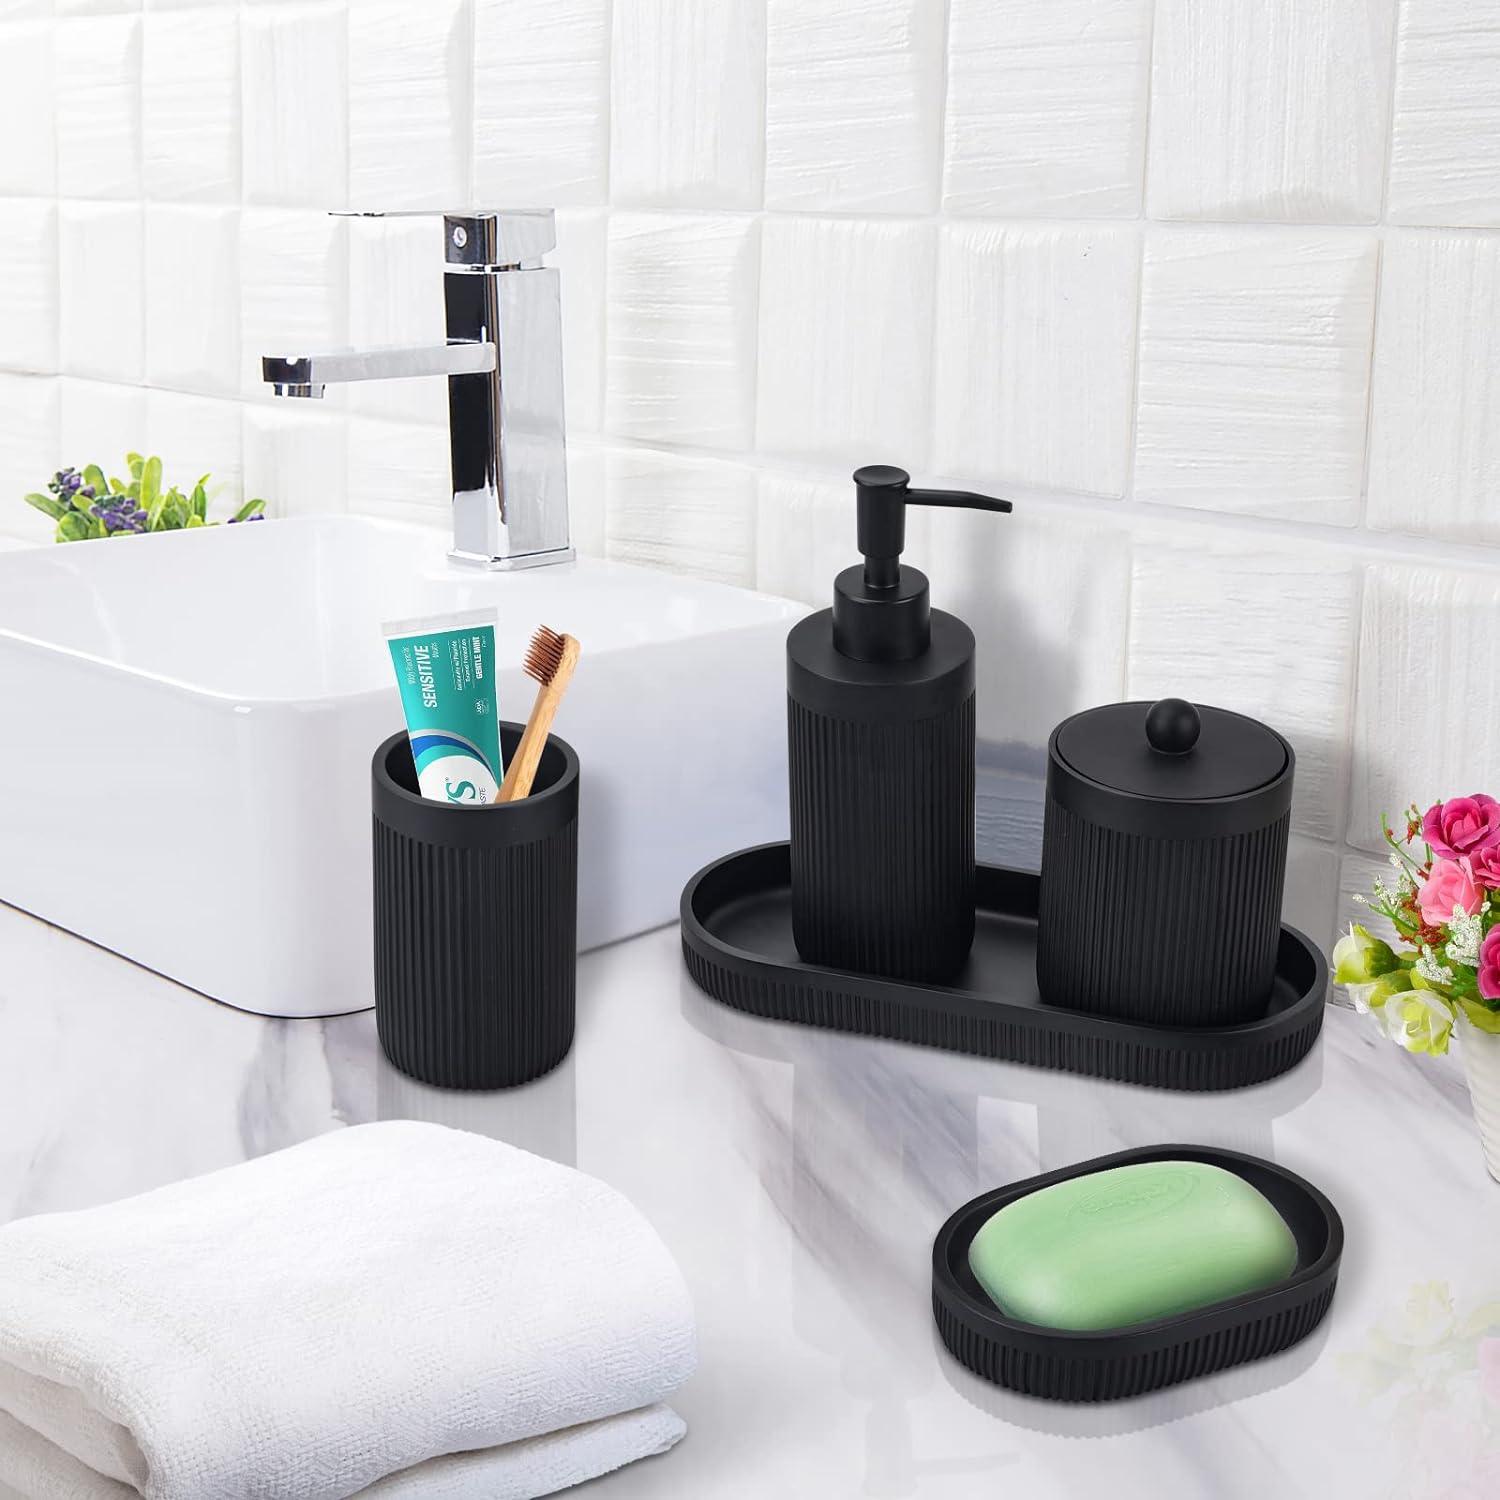 Dispensador de jabón líquido de manos para baño, juego de accesorios de  baño de 5 piezas, juego de decoración de baño, incluye dispensador de  jabón